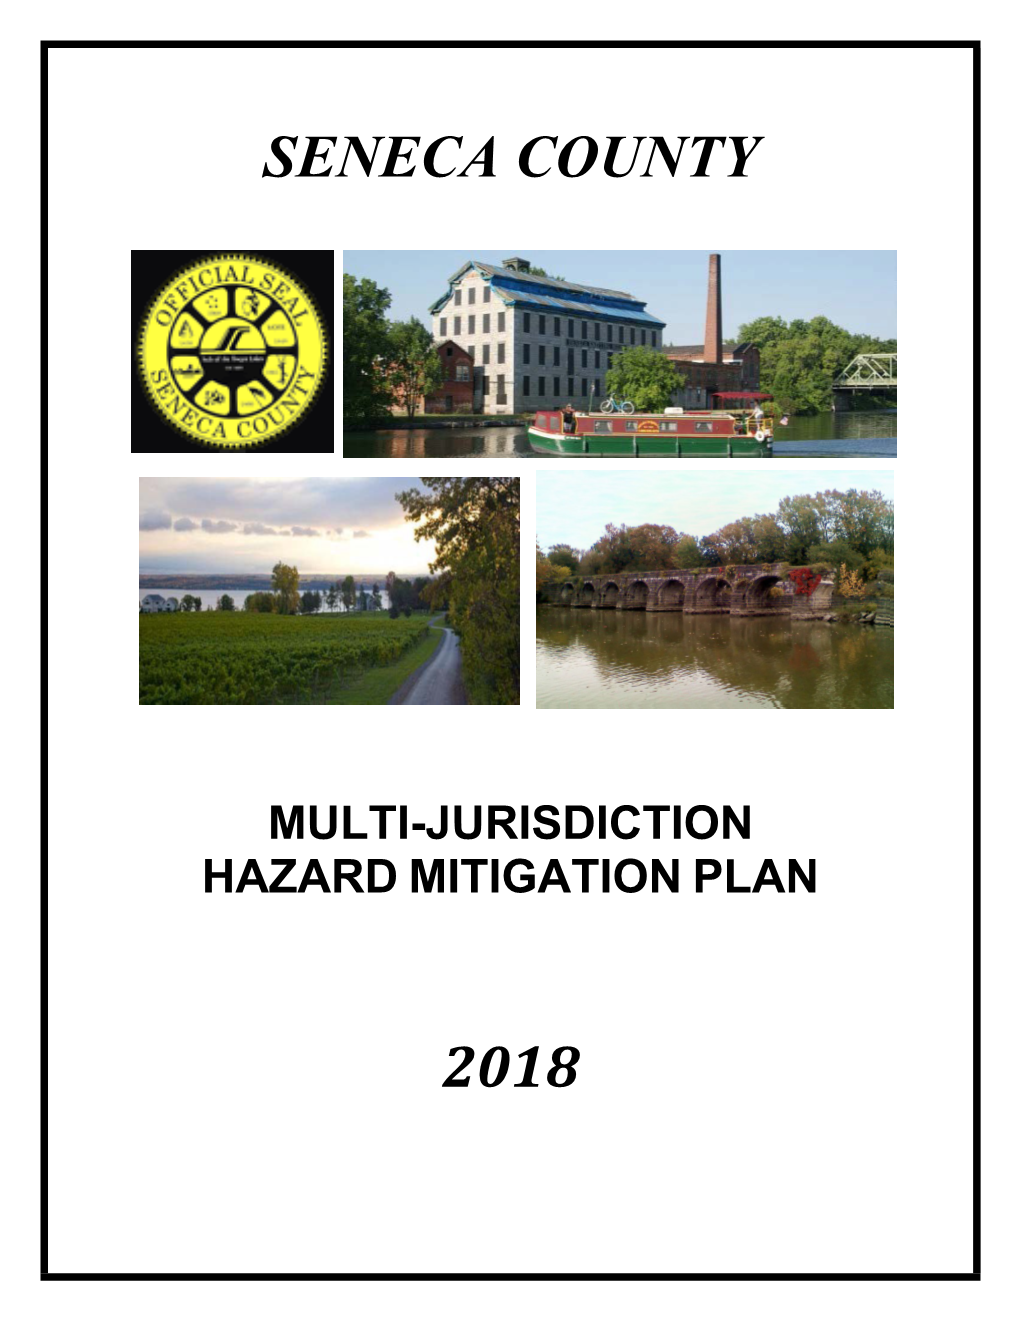 Hazard Mitigation Plan 2018